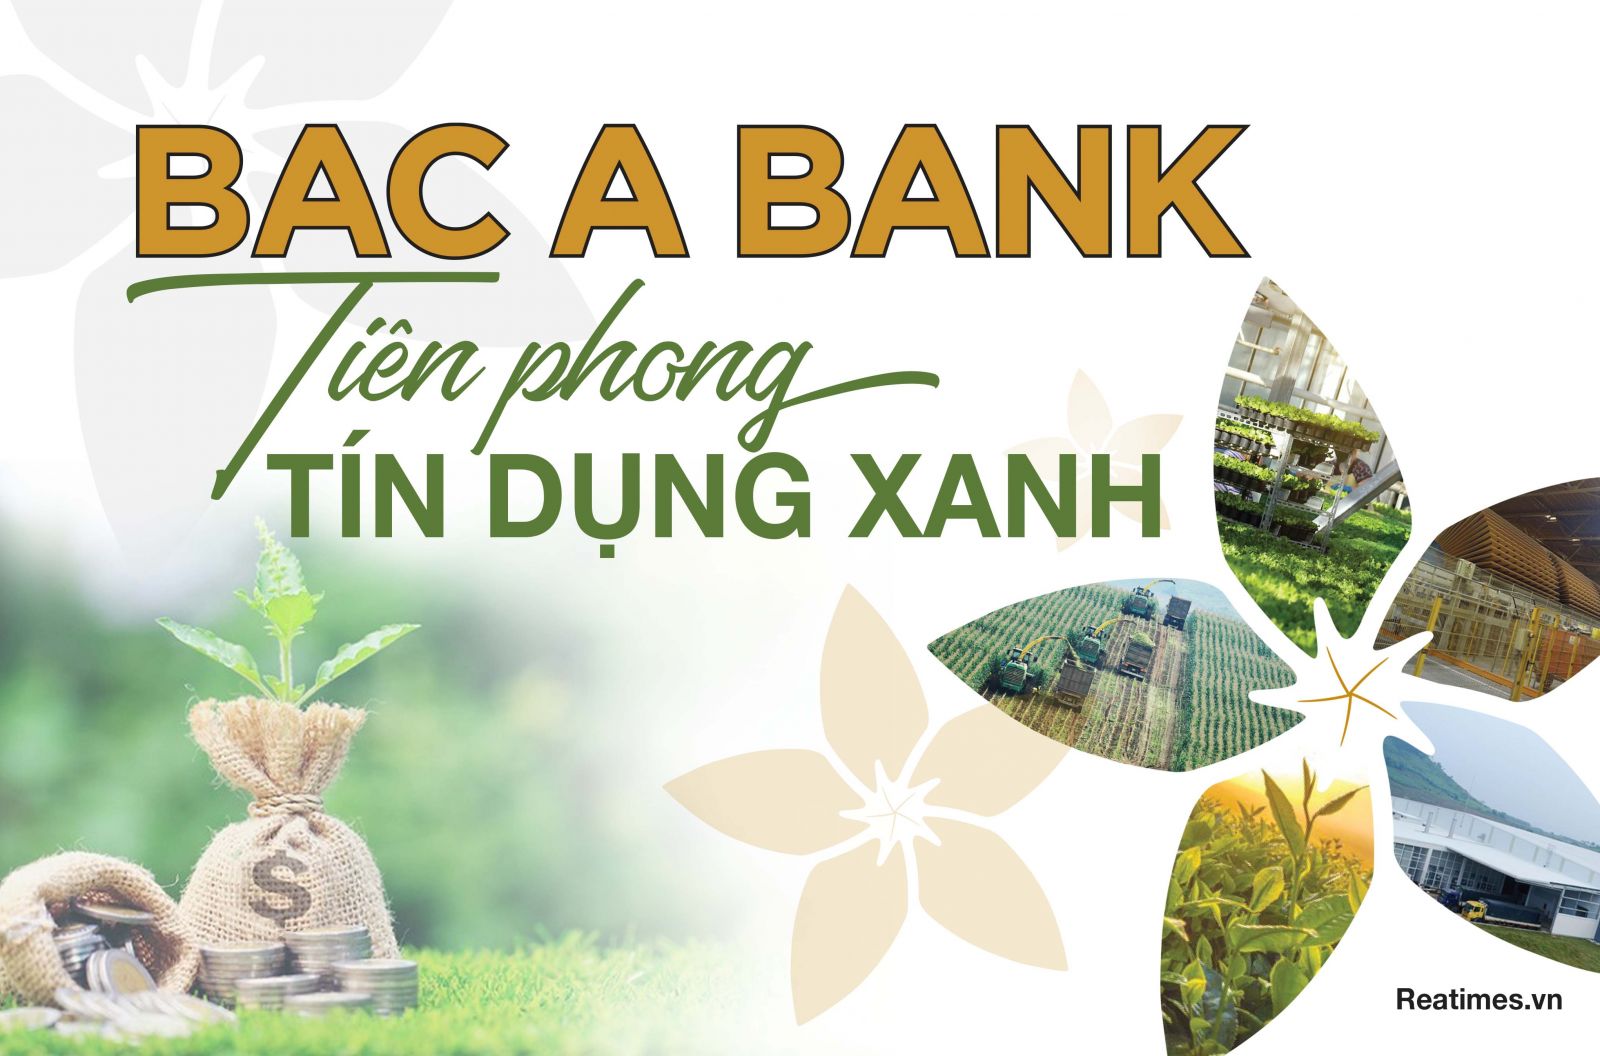 BAC A BANK: Tiên phong tín dụng xanh